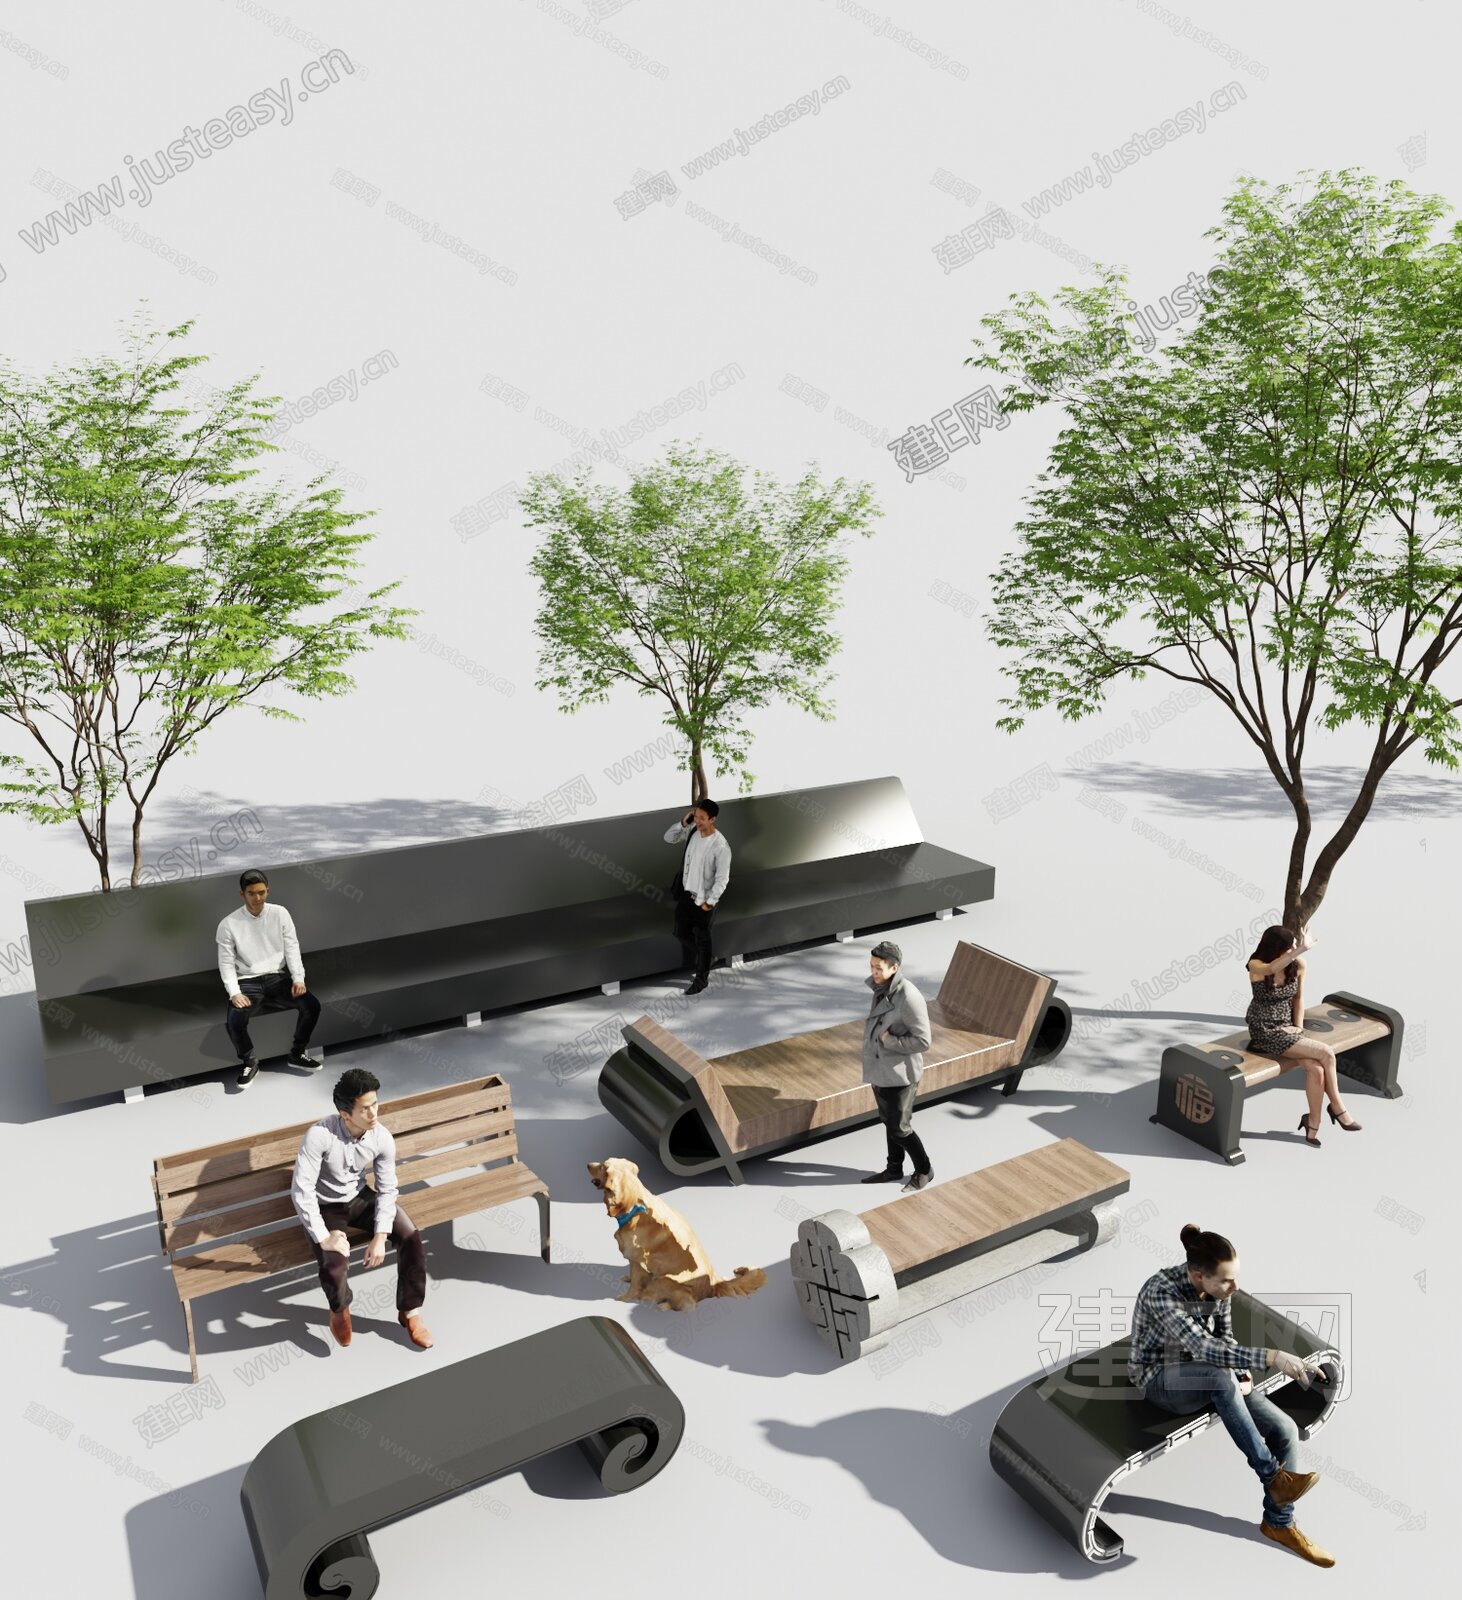 公共互动座椅装置-园林小品案例-筑龙园林景观论坛